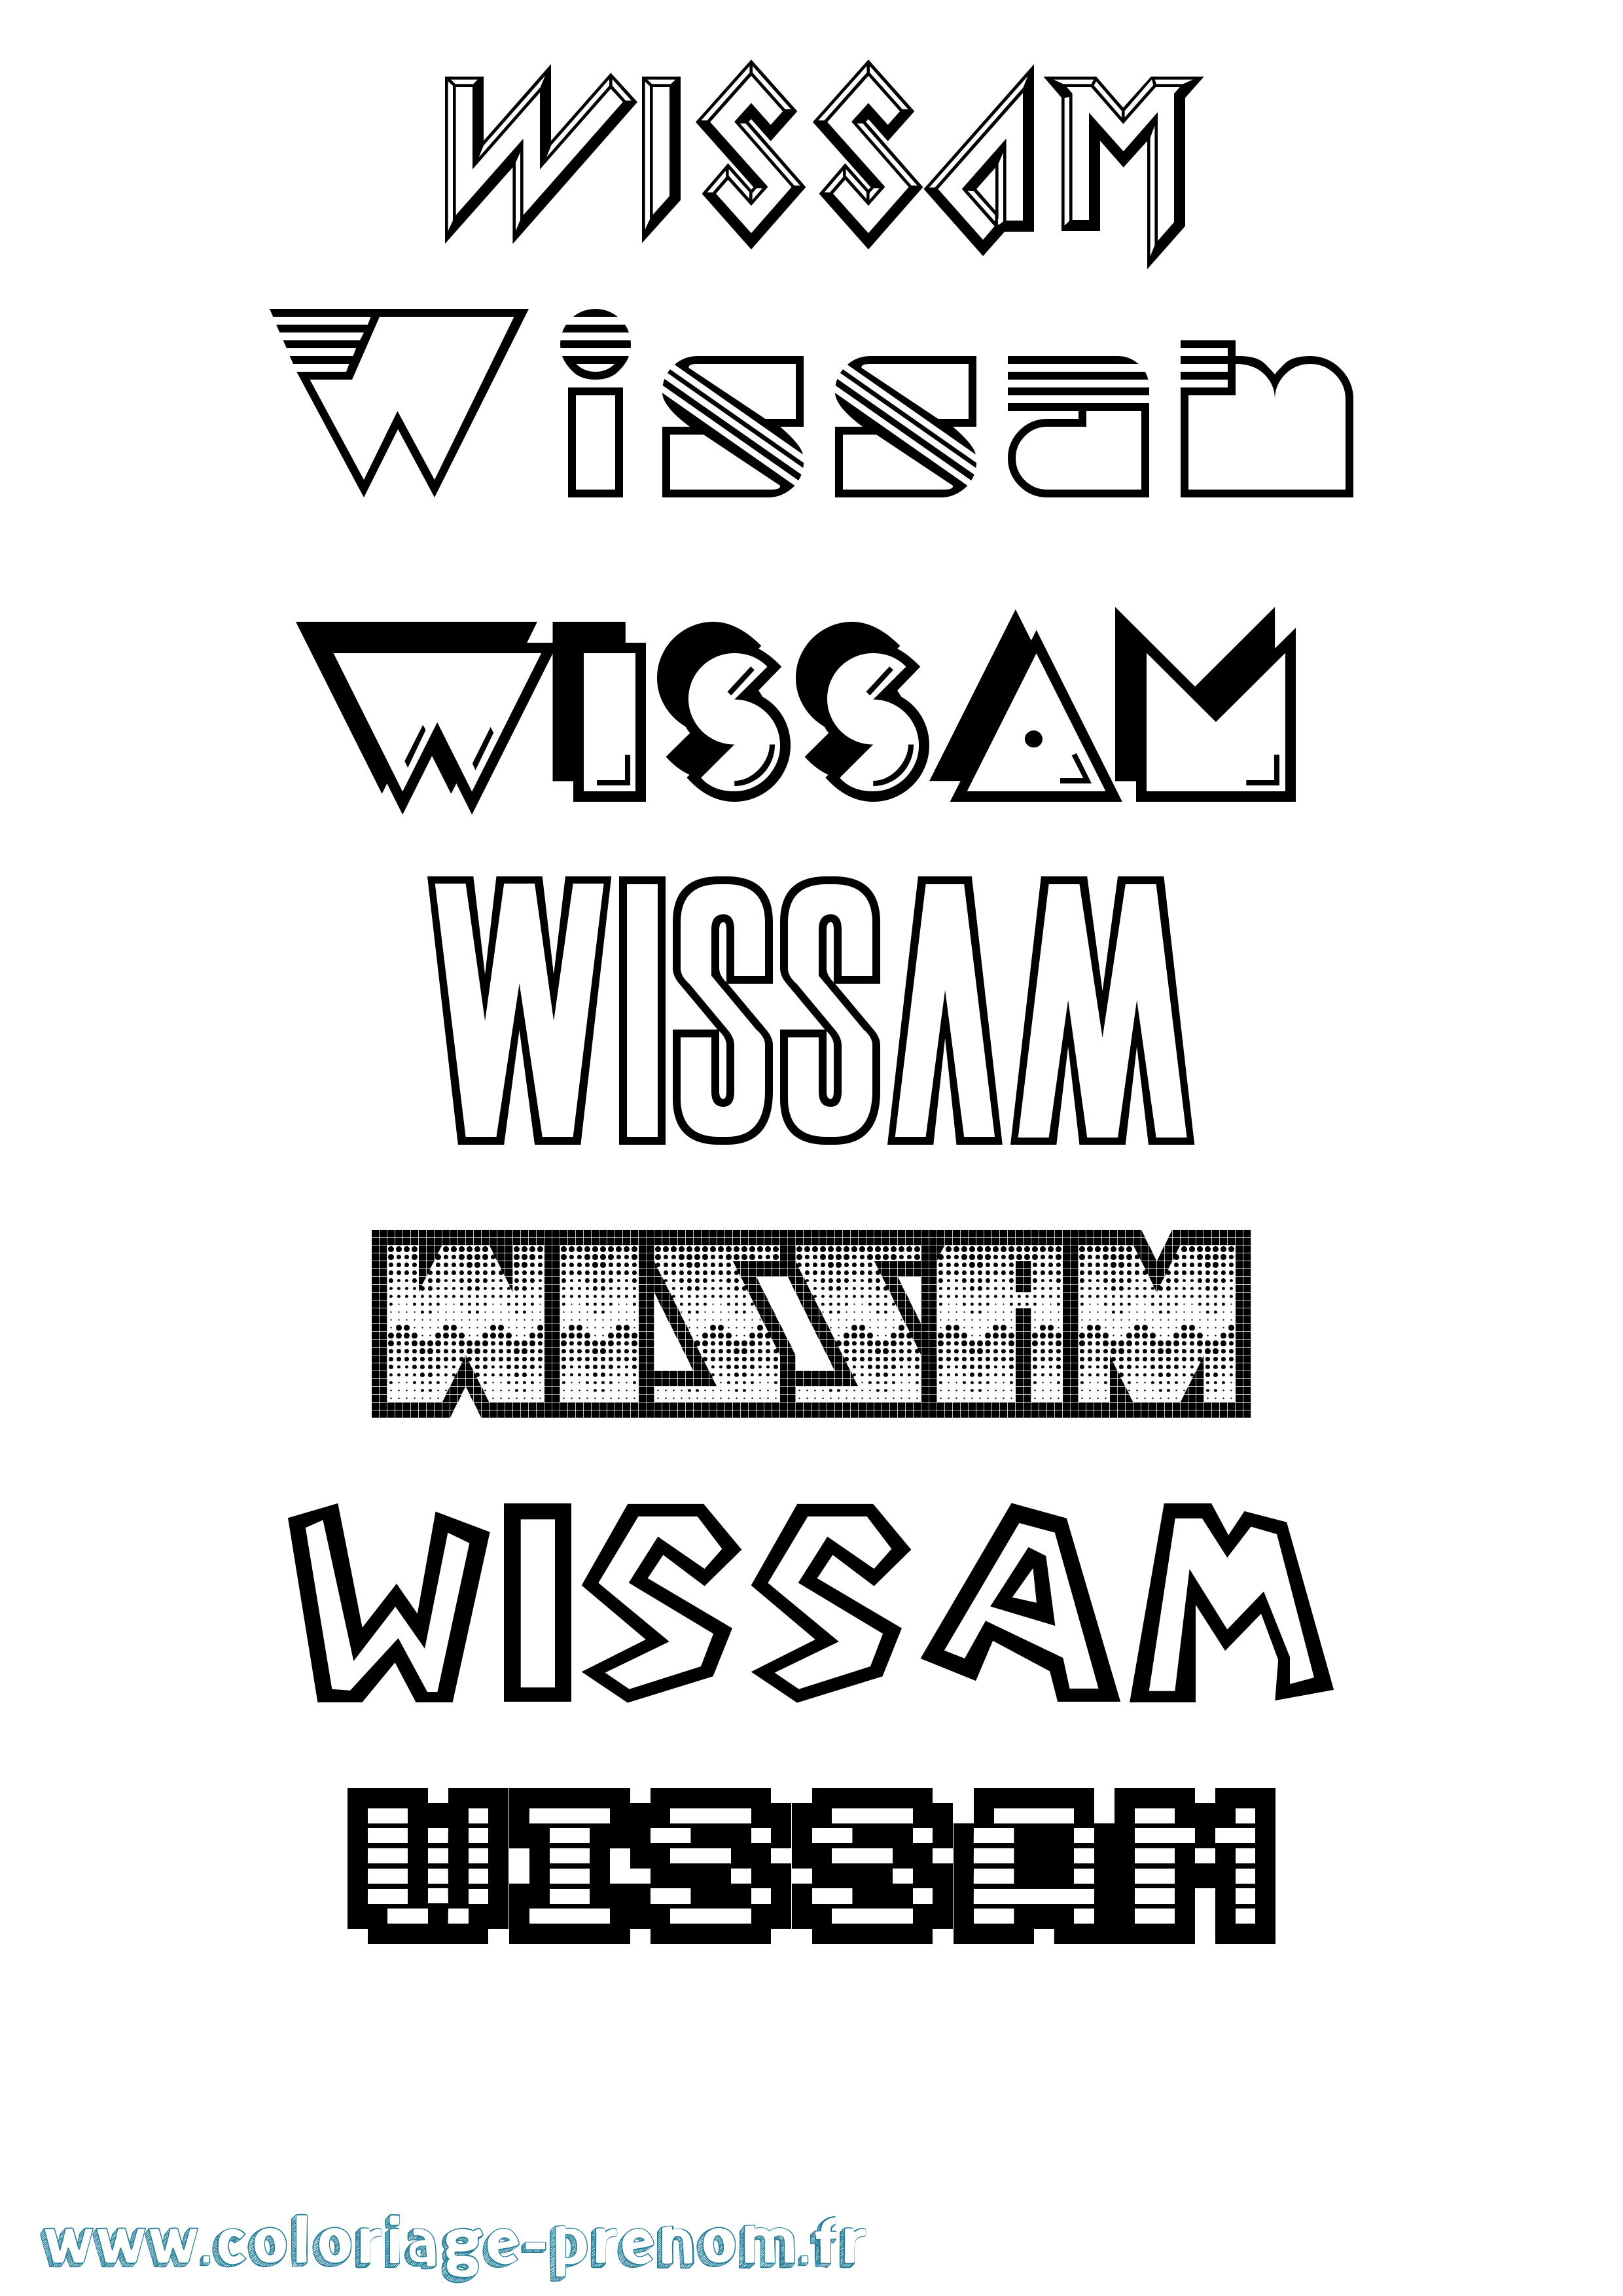 Coloriage prénom Wissam